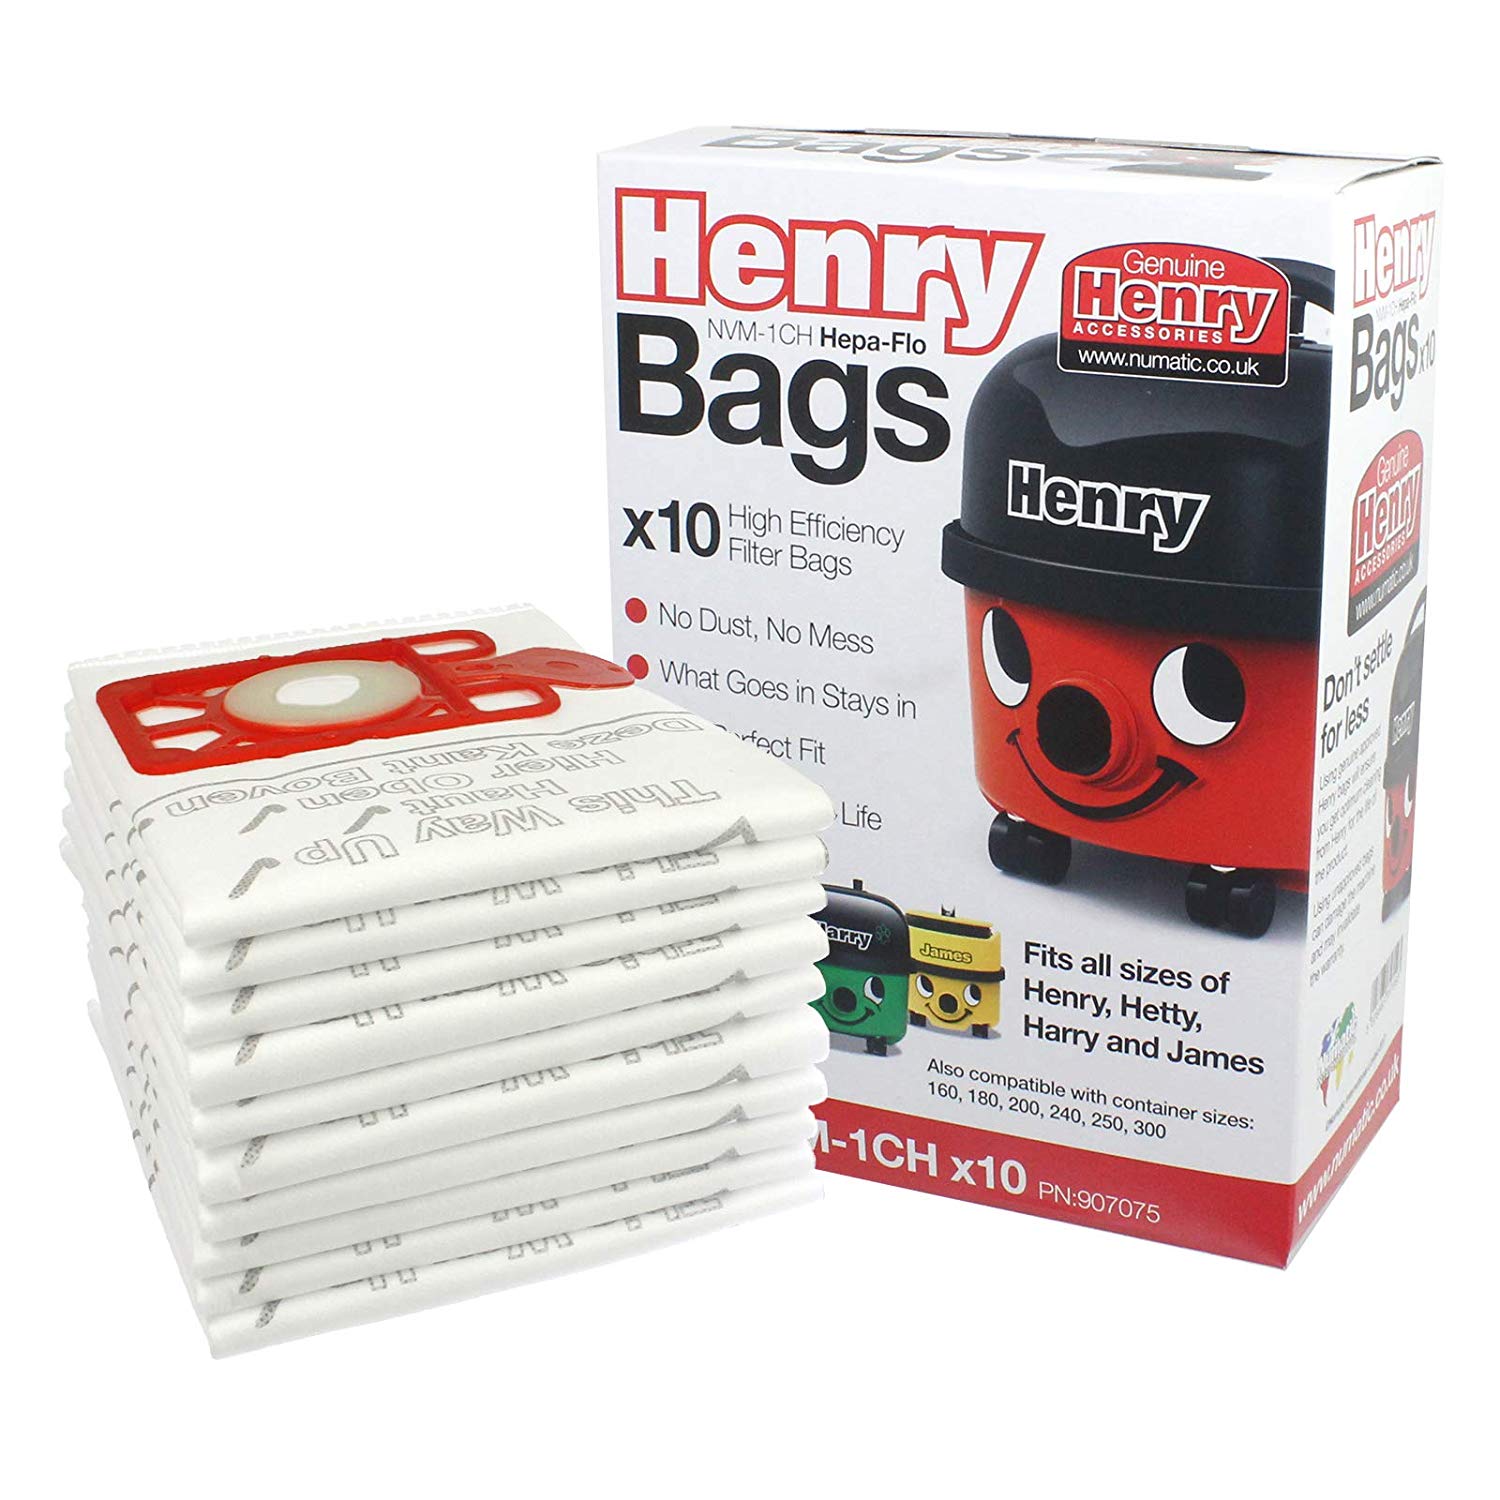 Numatic HENRY HETTY Vacuum Cleaner Hepa-Flo Dust Bags Genuine NVM-1CH 604015 907075 (Pack of 40 Bags)